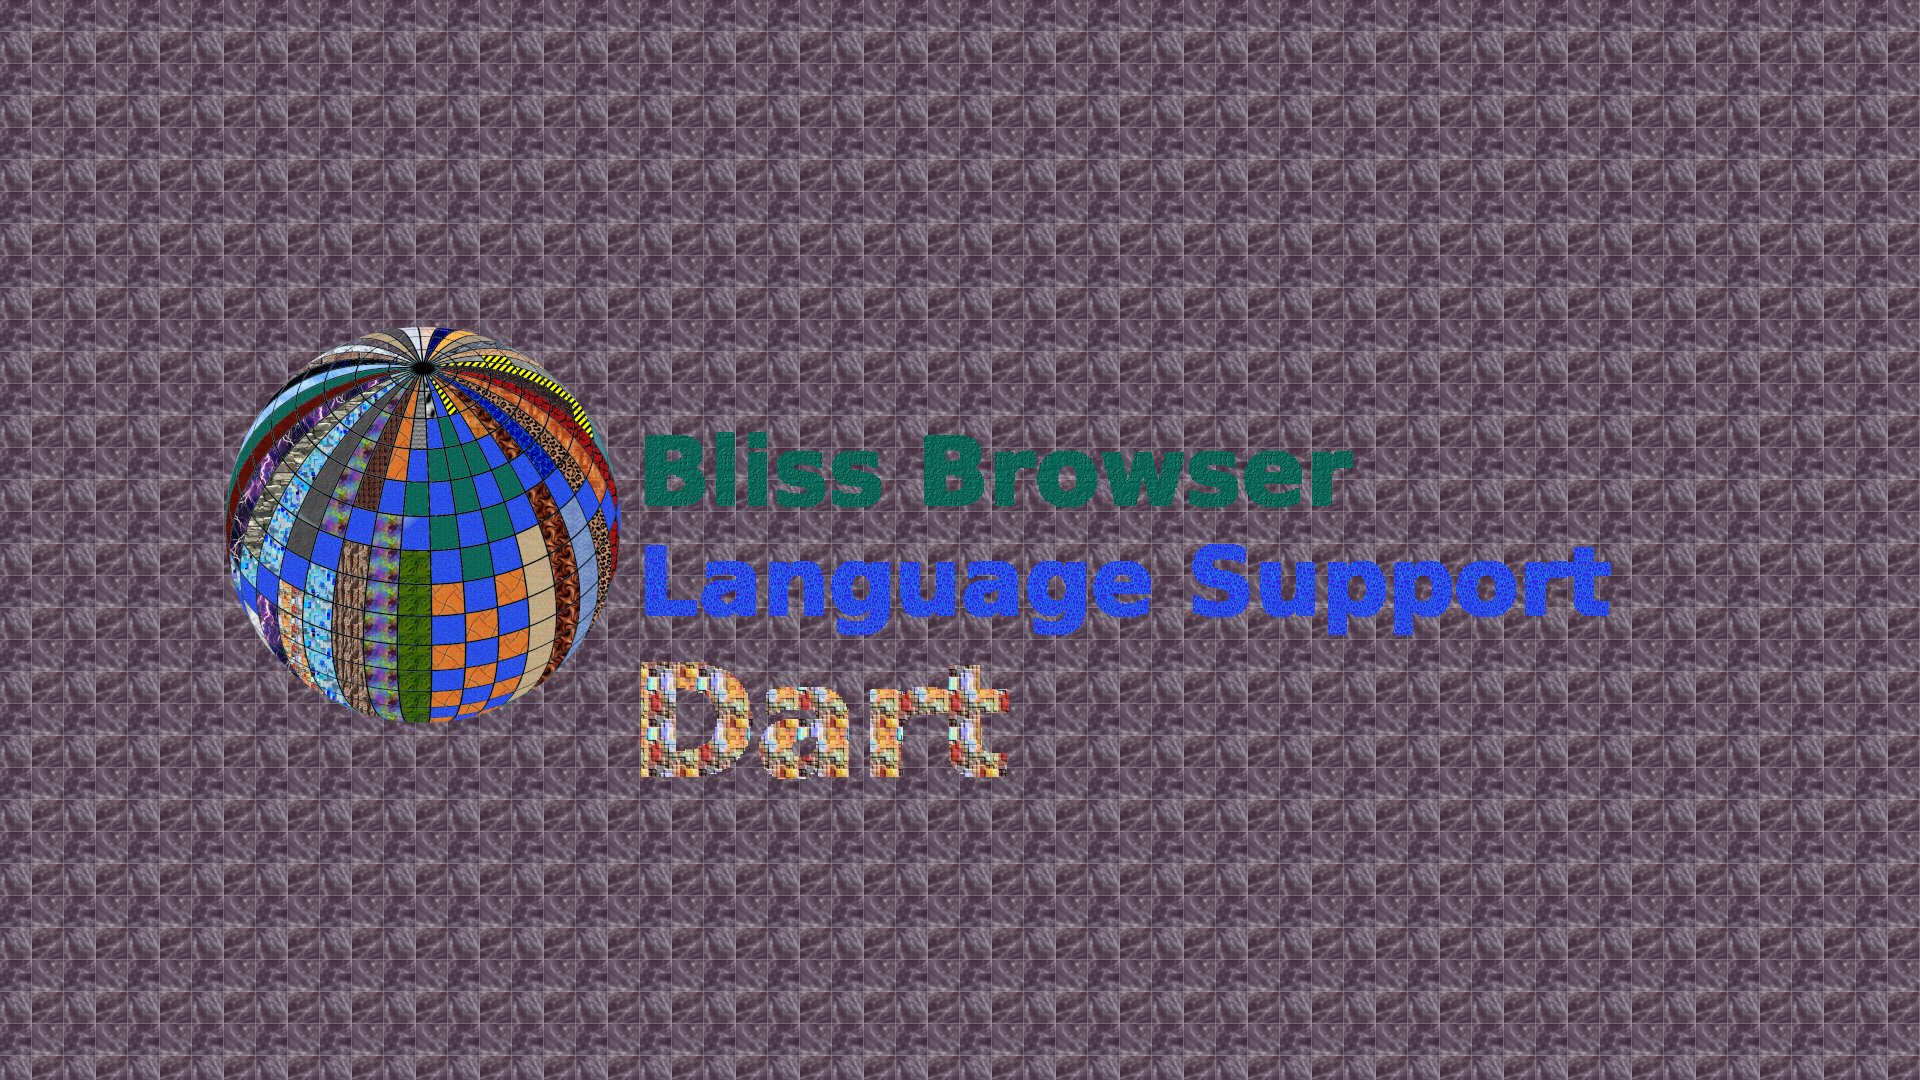 Bliss_Browser_Dart